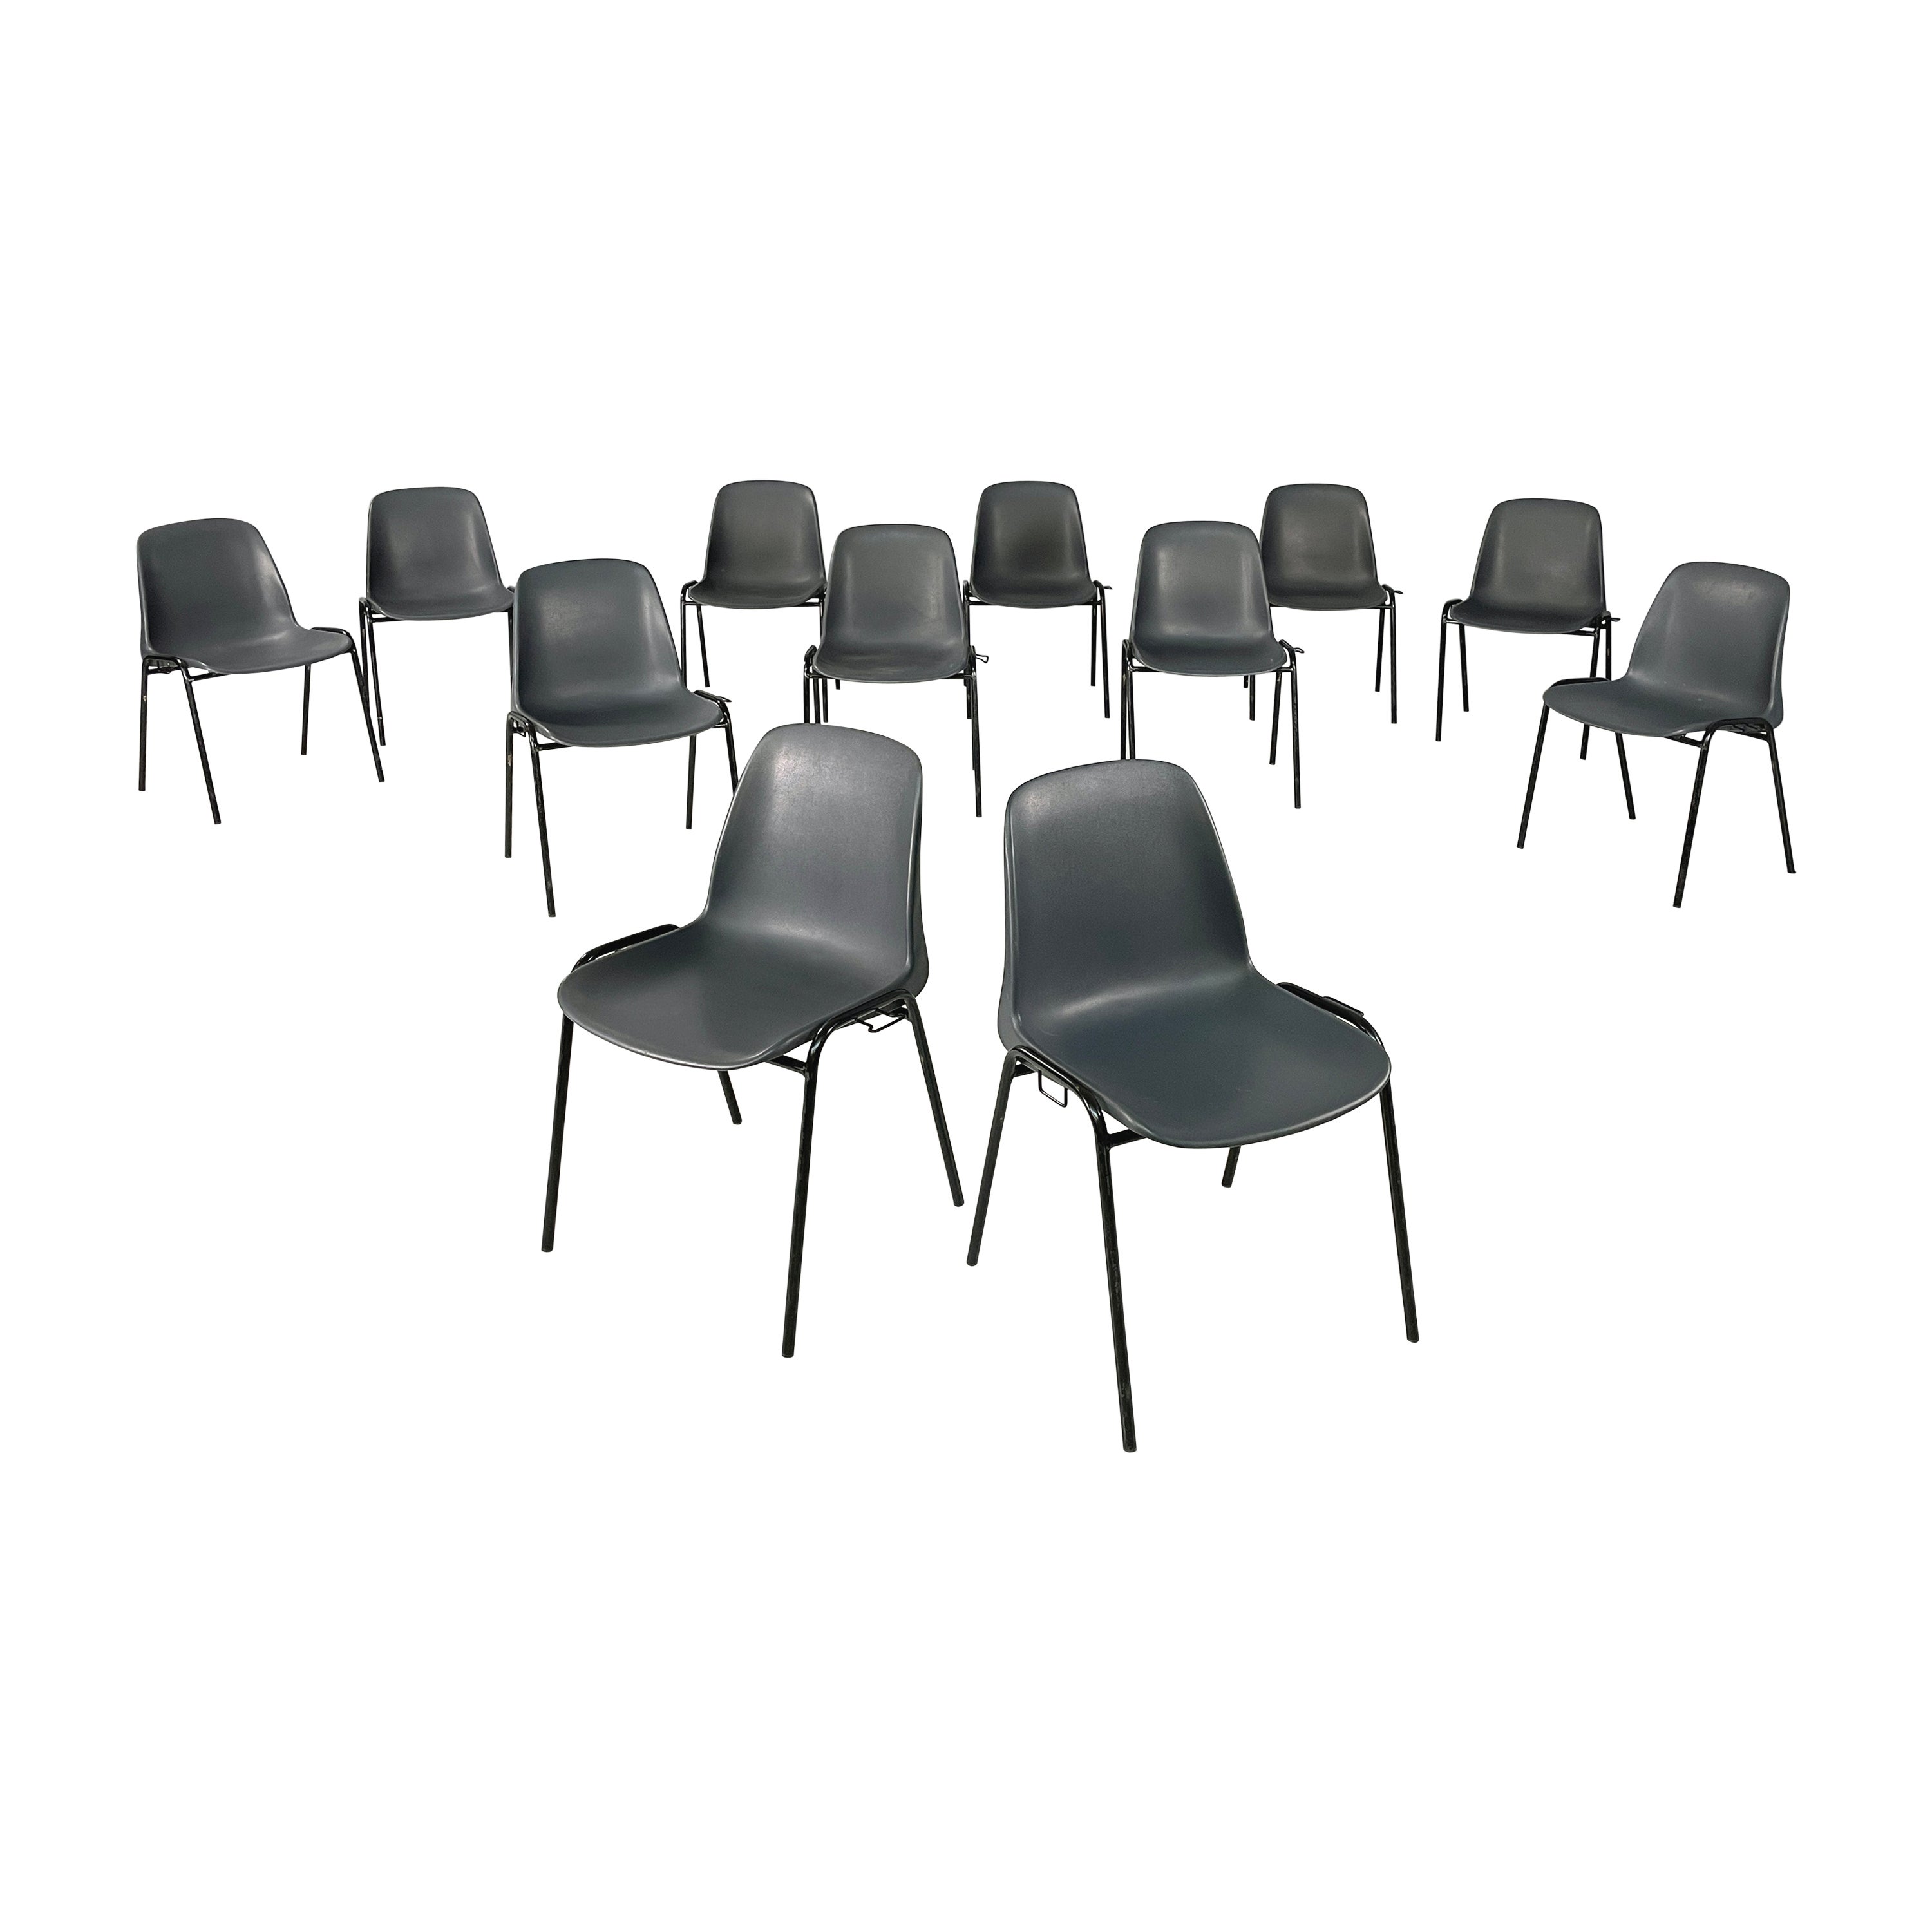 Italienisch modern Stapelbare Stühle in grauem Kunststoff und schwarzem Metall, 2000er